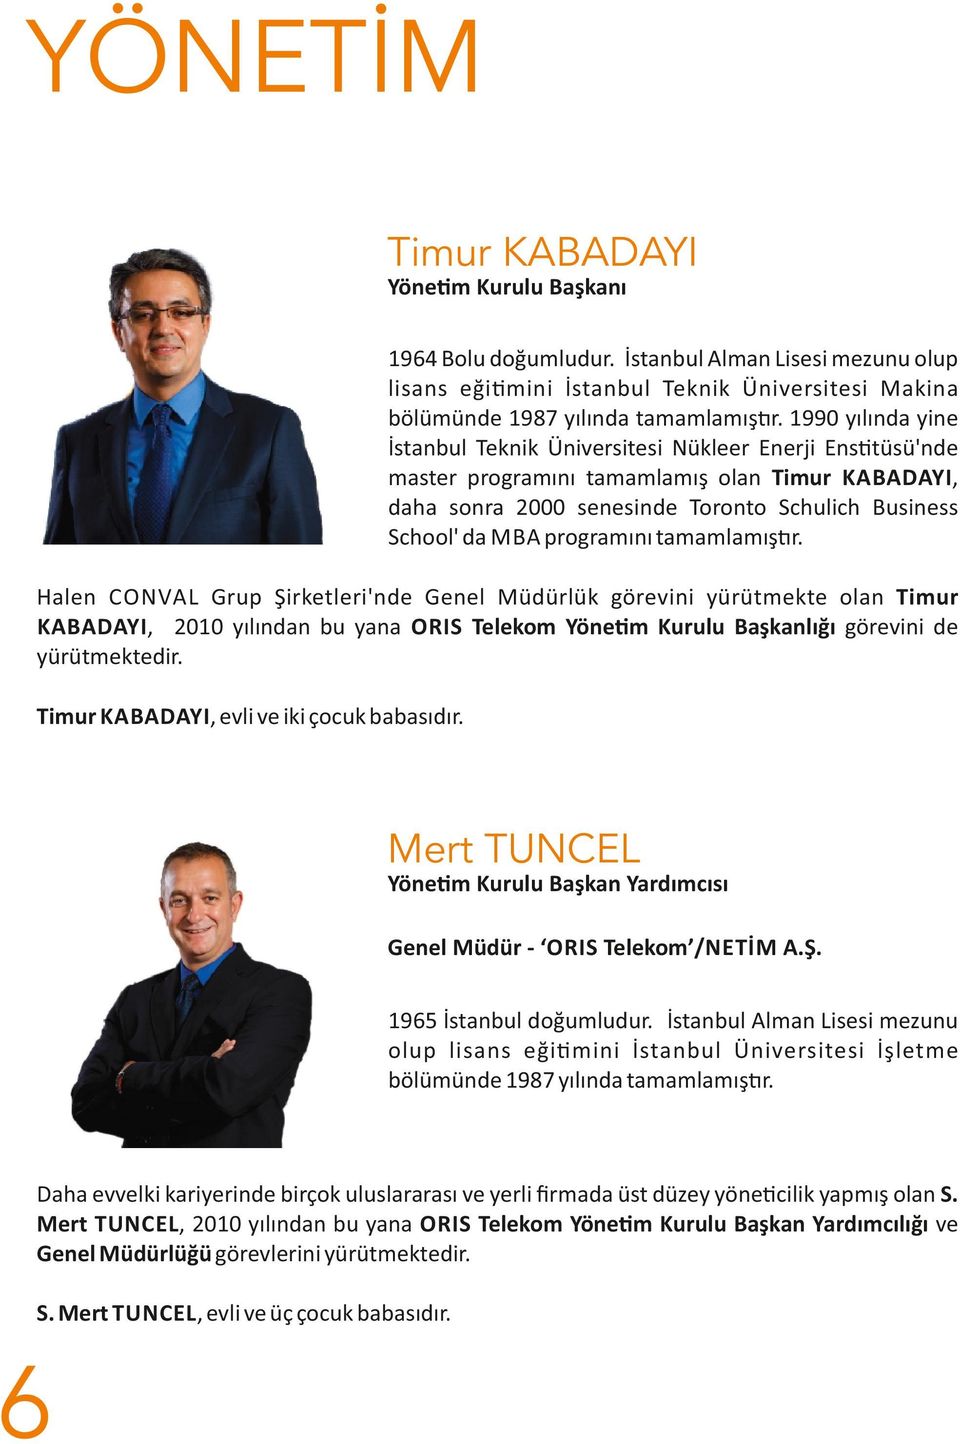 programını tamamlamış r. Halen CONVAL Grup Şirketleri'nde Genel Müdürlük görevini yürütmekte olan Timur KABADAYI, 2010 yılından bu yana ORIS Telekom Yöne m Kurulu Başkanlığı görevini de yürütmektedir.